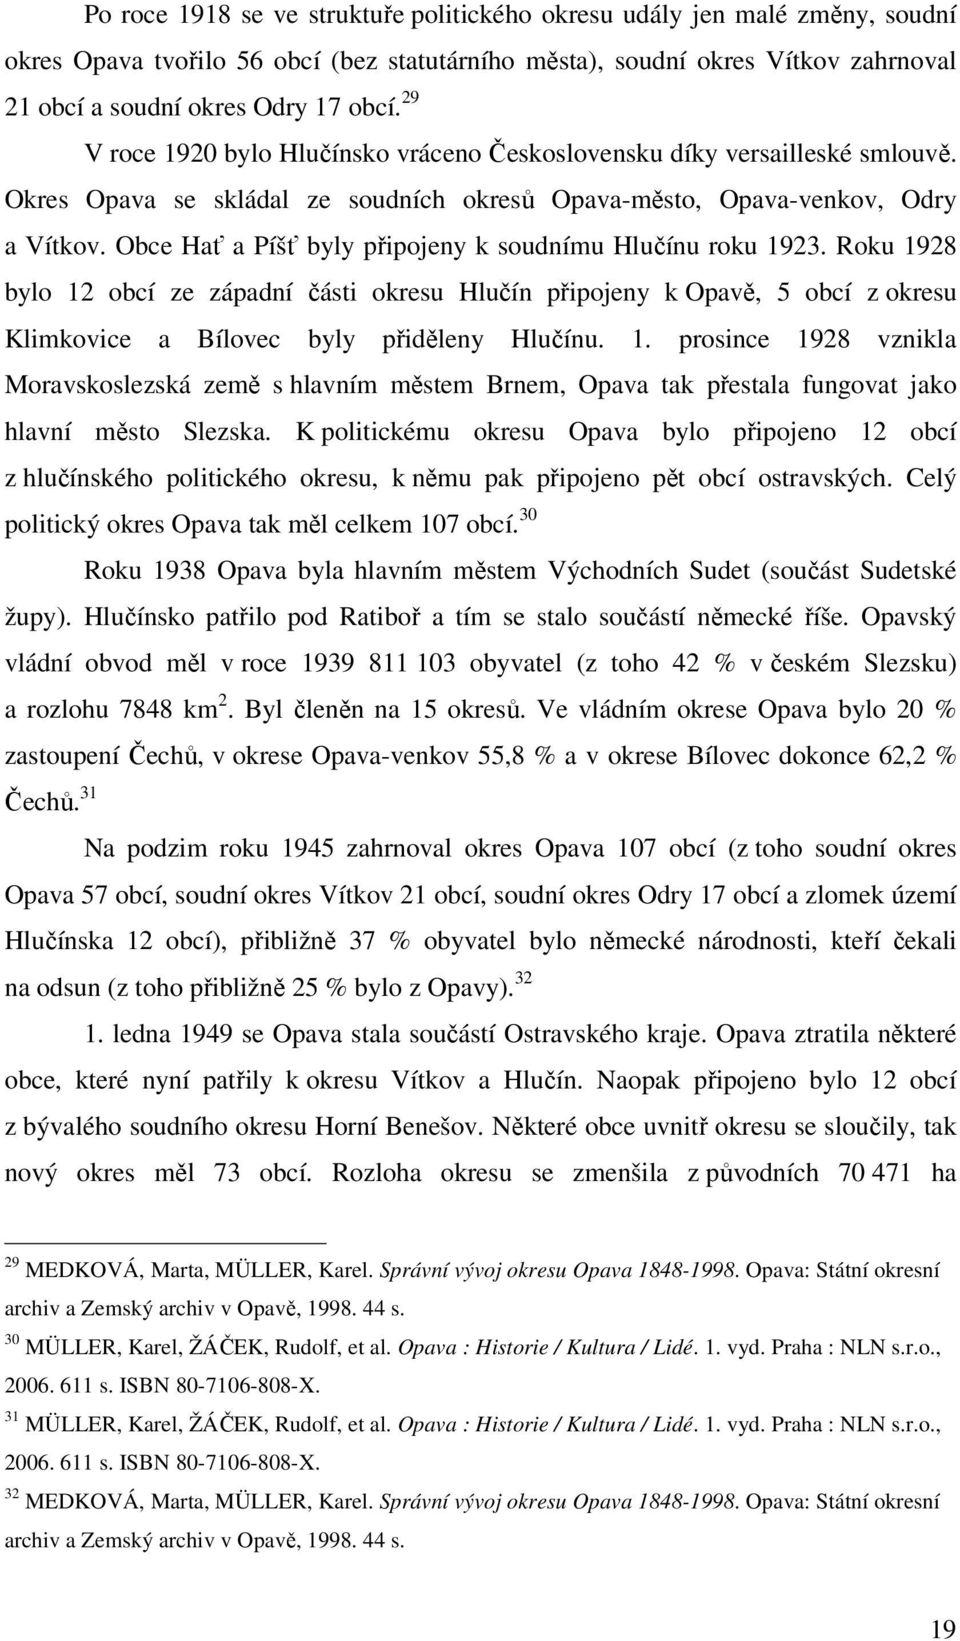 města), soudní okres Vítkov zahrnoval 21 obcí a soudní okres Odry 17 obcí. 29 V roce 1920 bylo Hlučínsko vráceno Československu díky versailleské smlouvě.